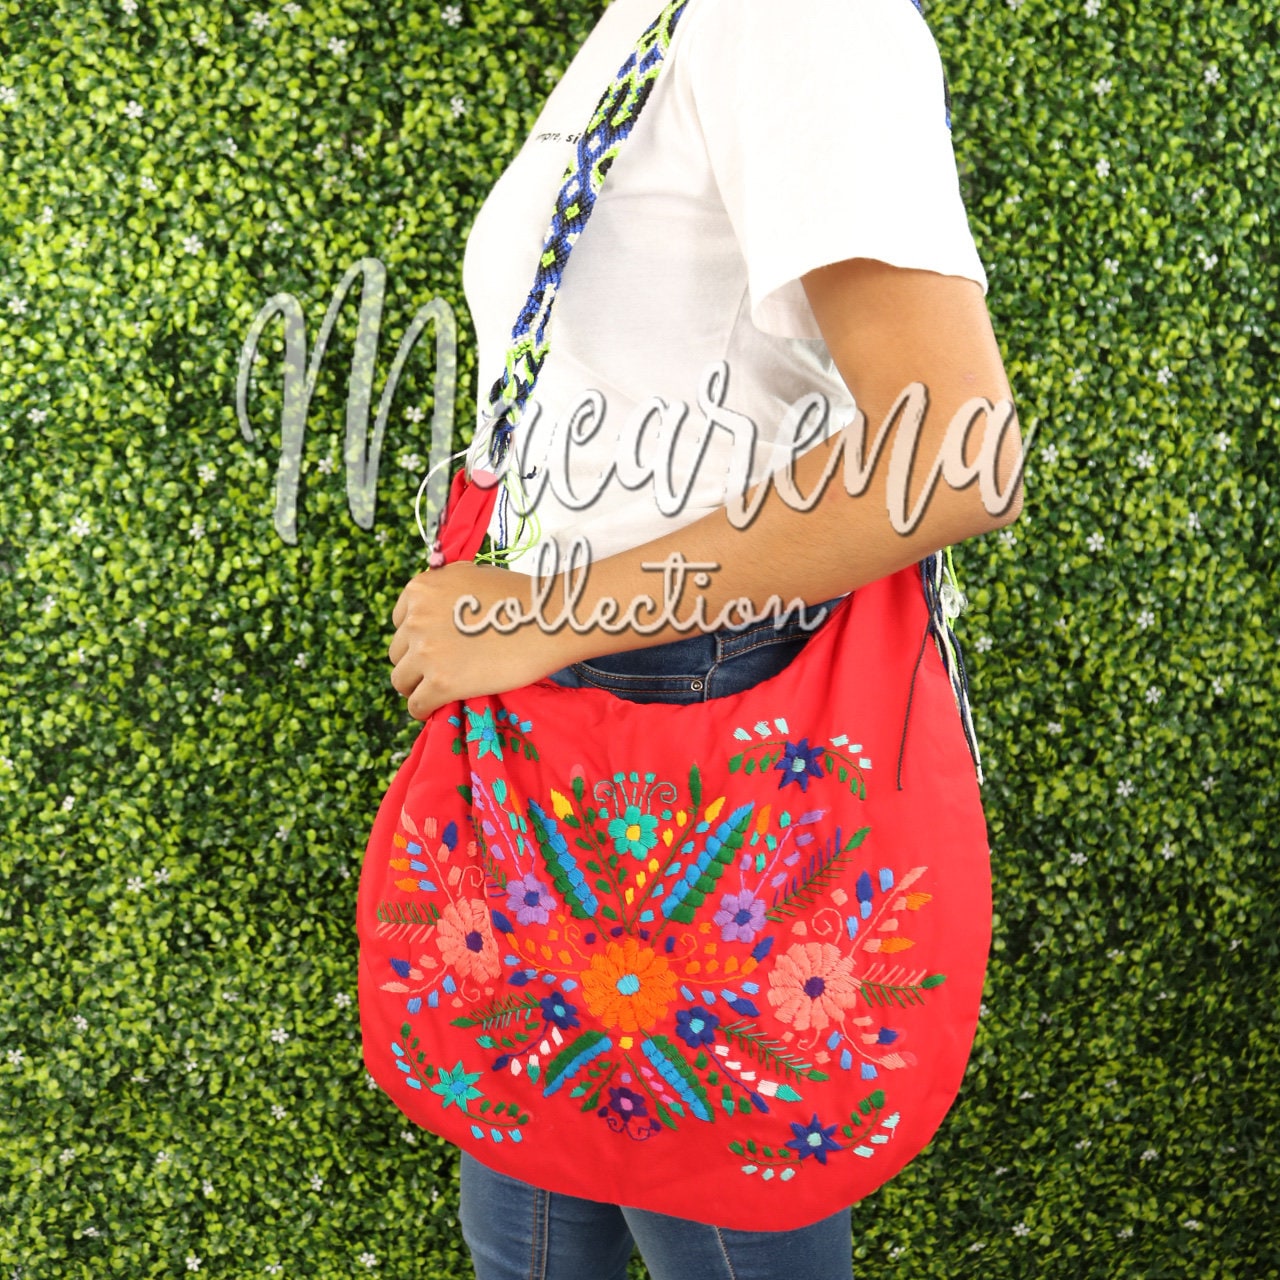 Do you like this bag?#handbag #handmadebag